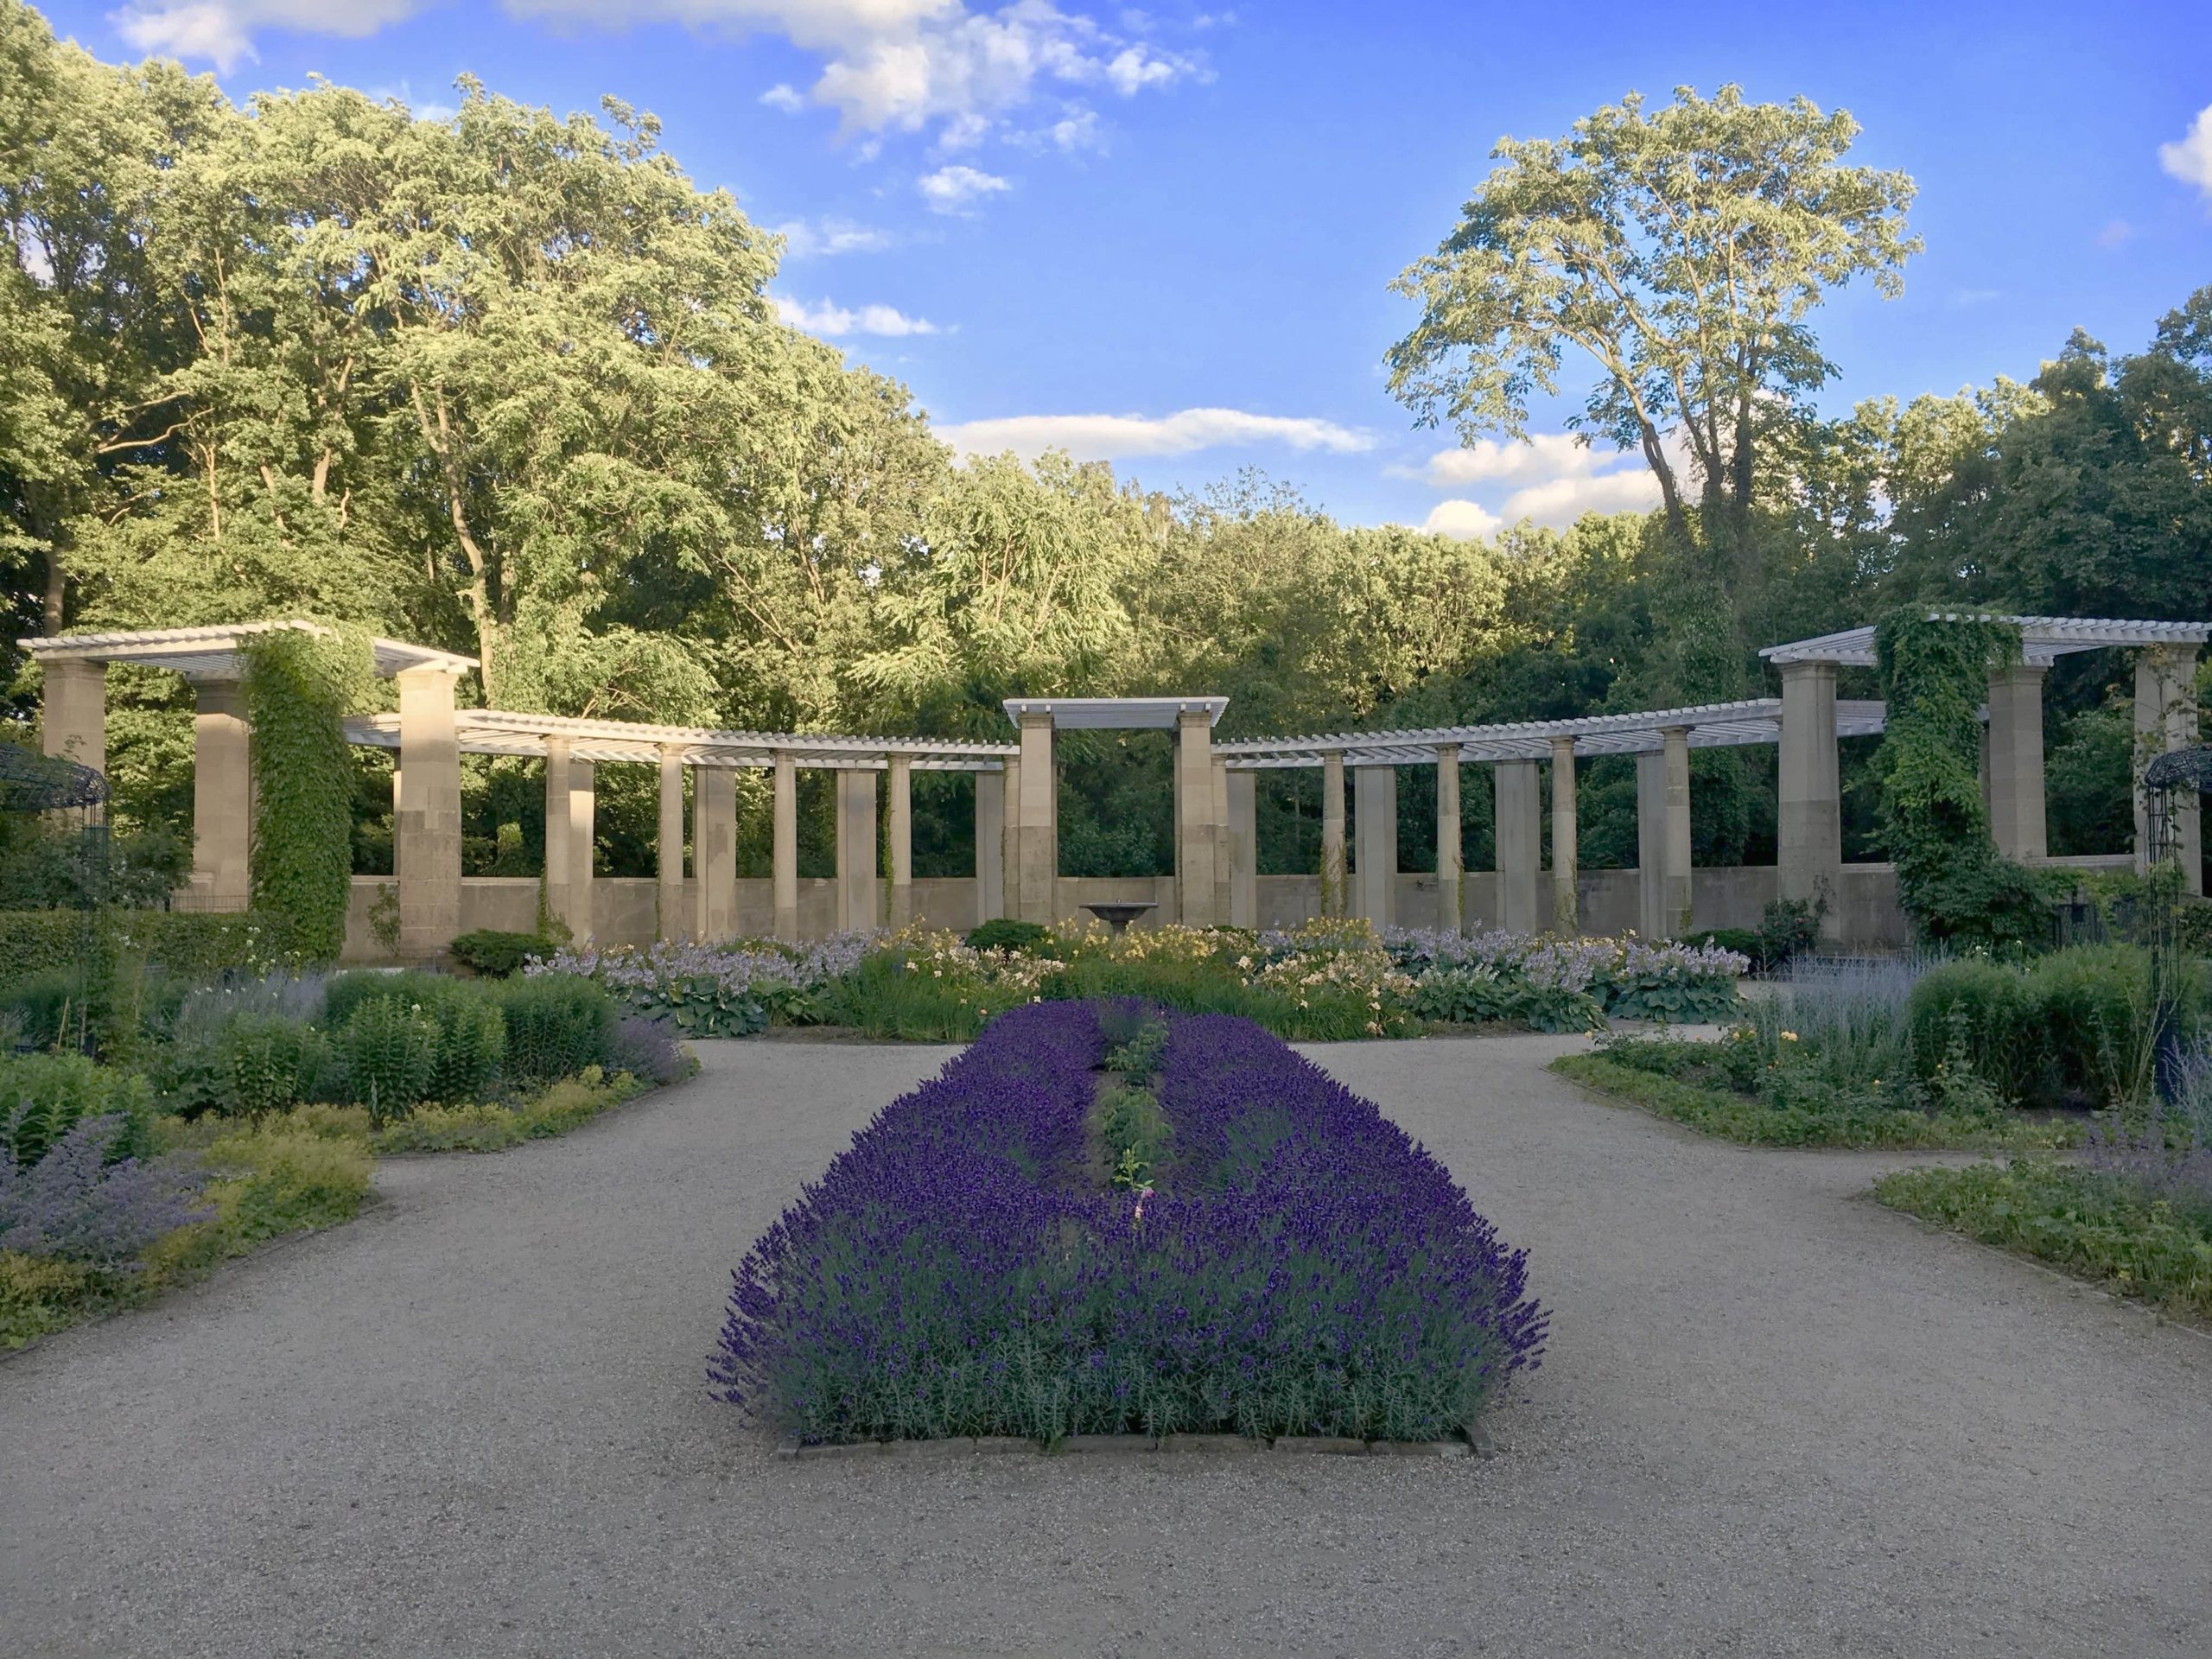 Rosengarten mit Rondell im Hintergrund, 2016